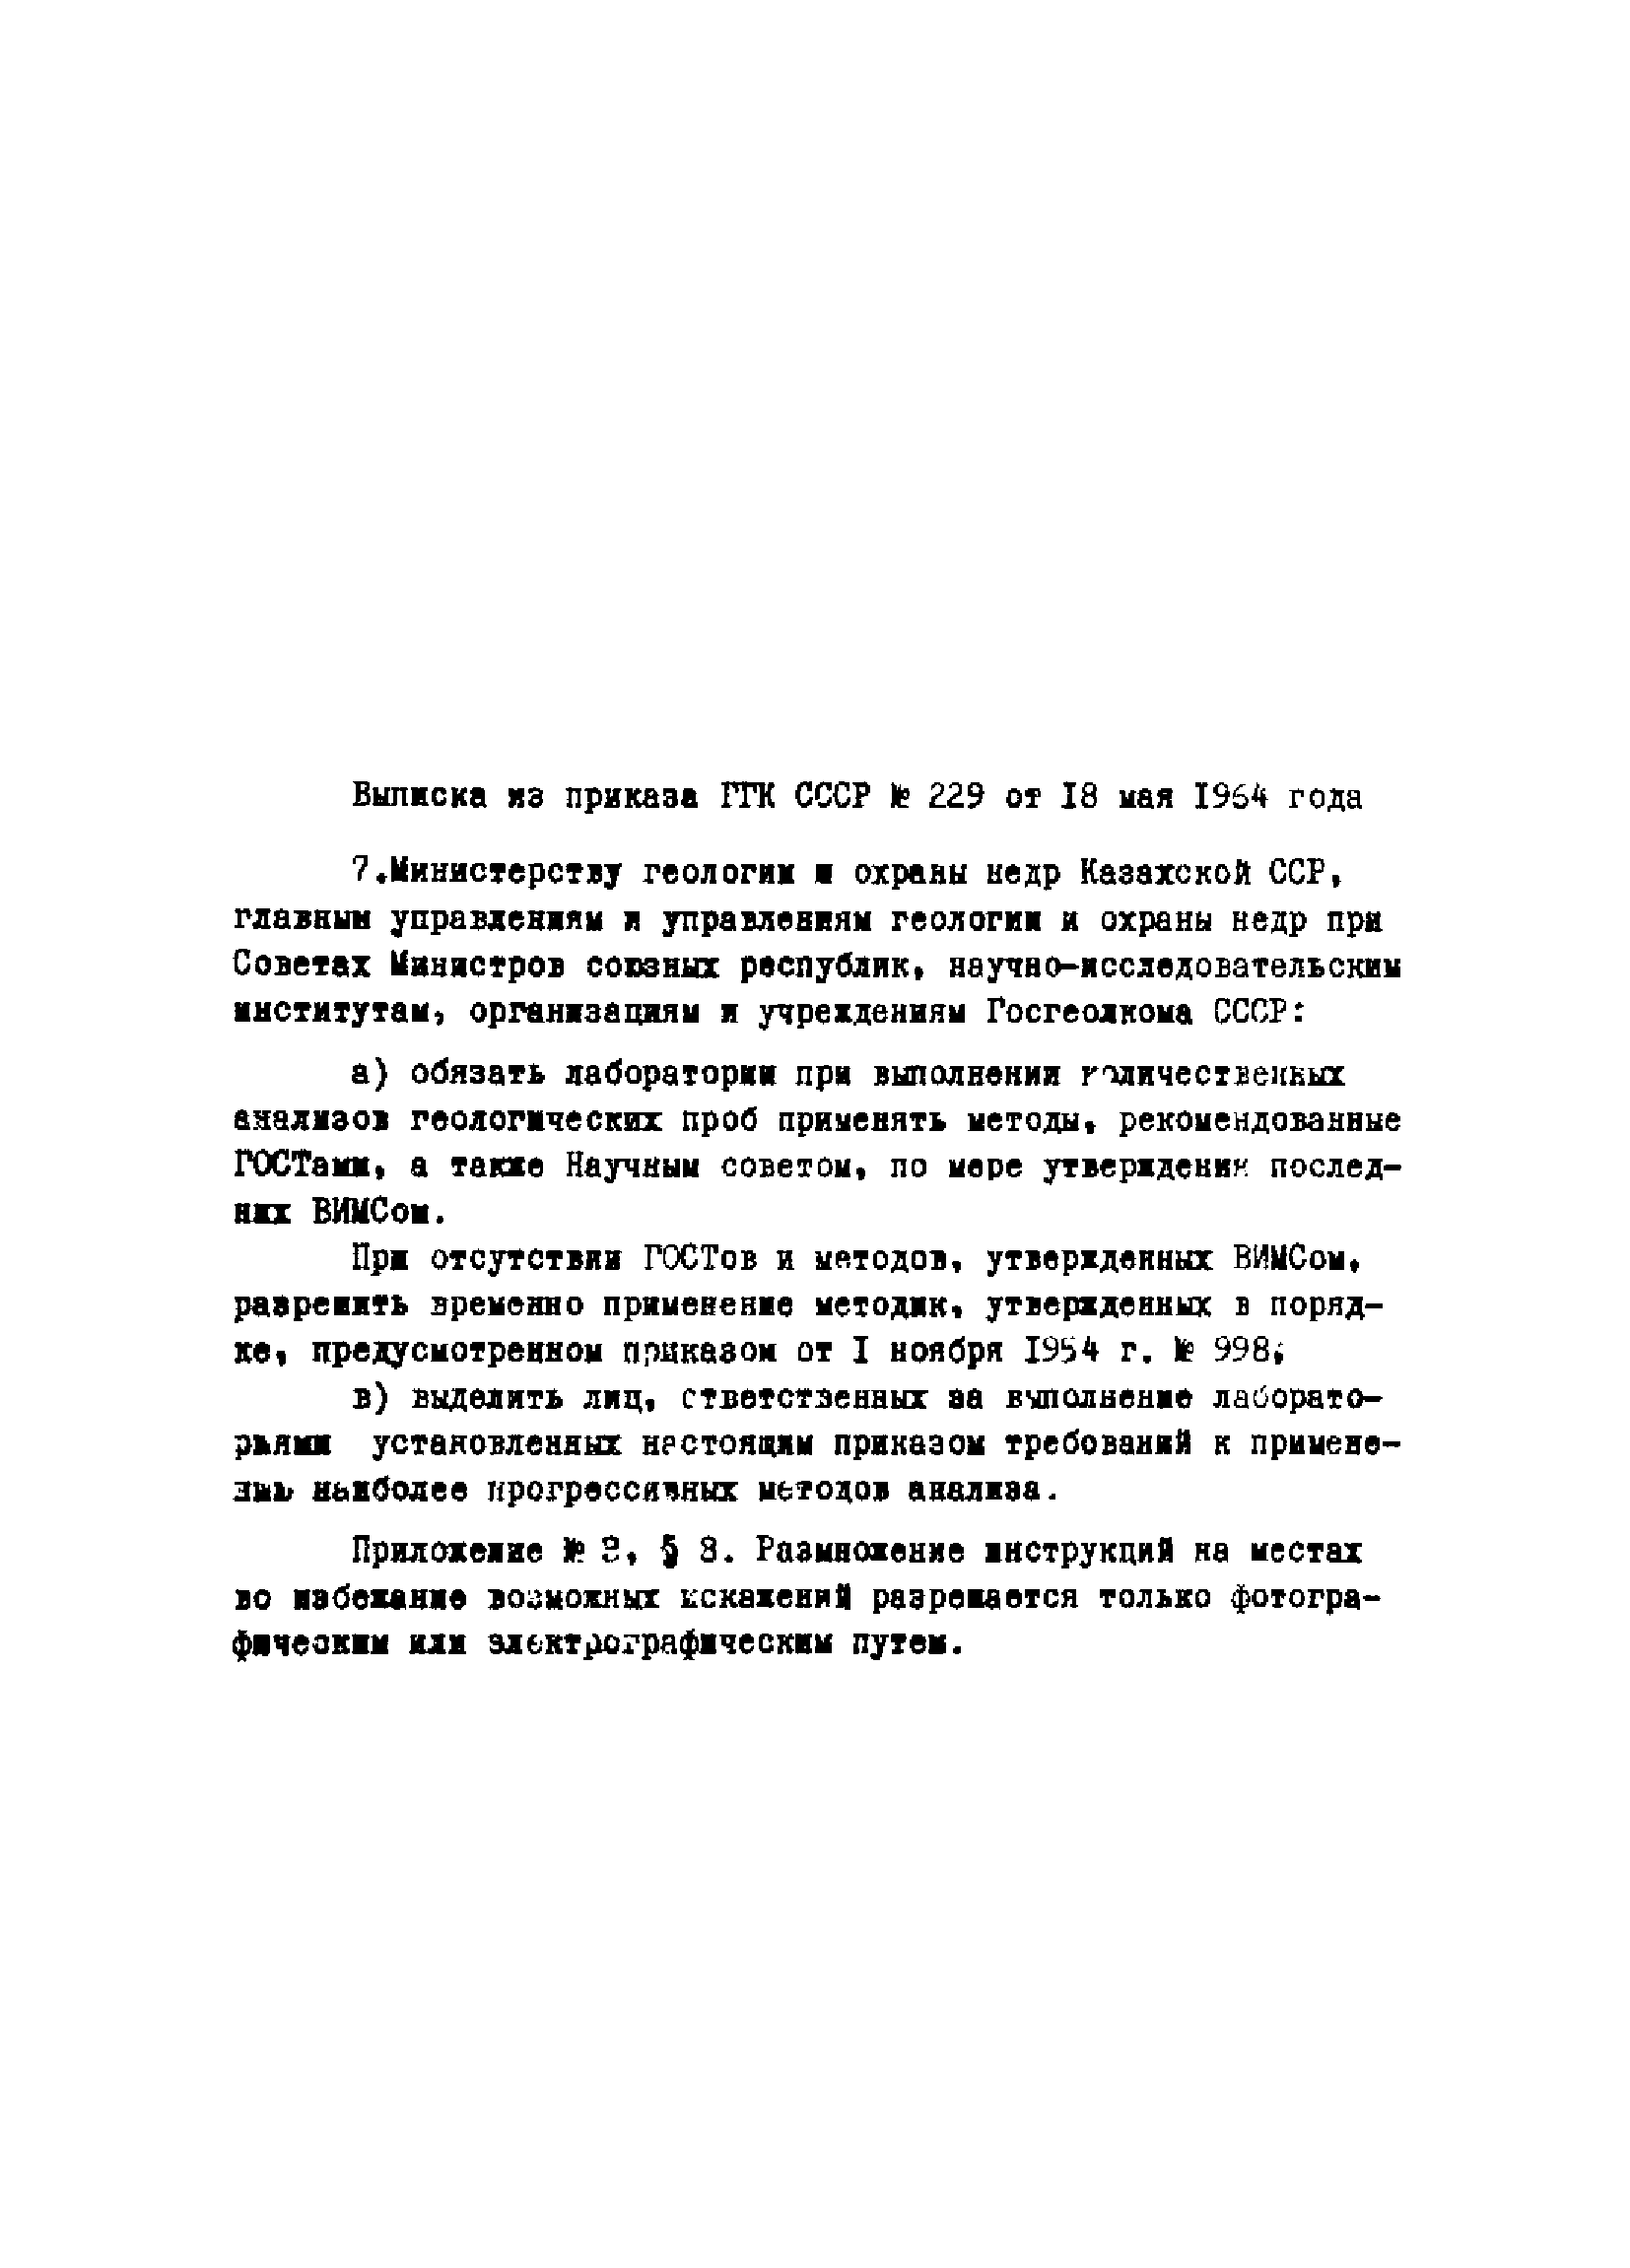 Инструкция НСАМ 58-С